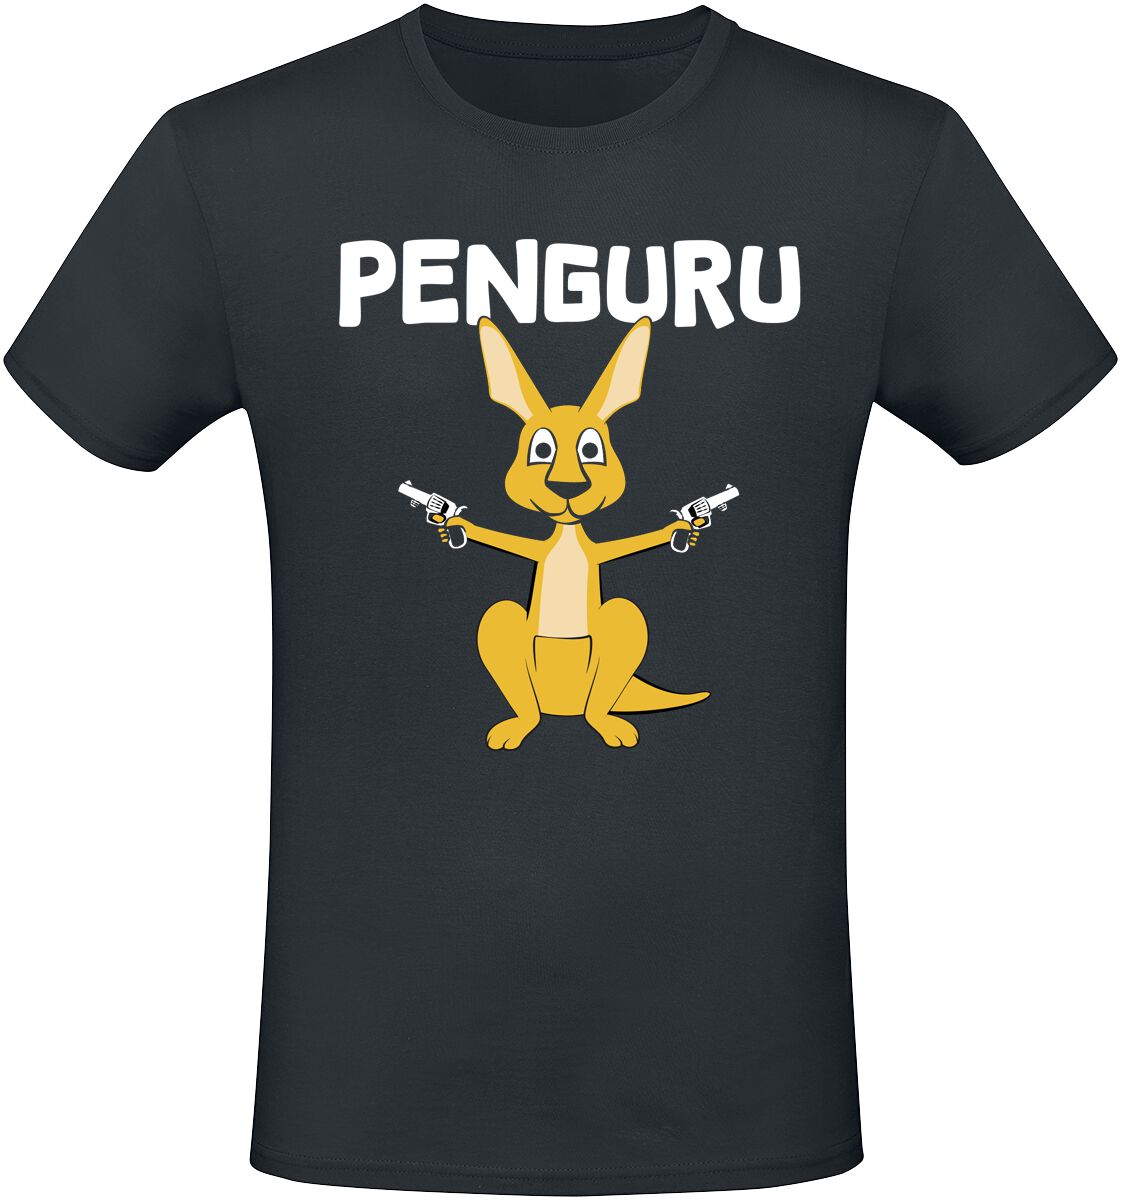 Tierisch T-Shirt - Penguru - M bis 3XL - für Männer - Größe 3XL - schwarz